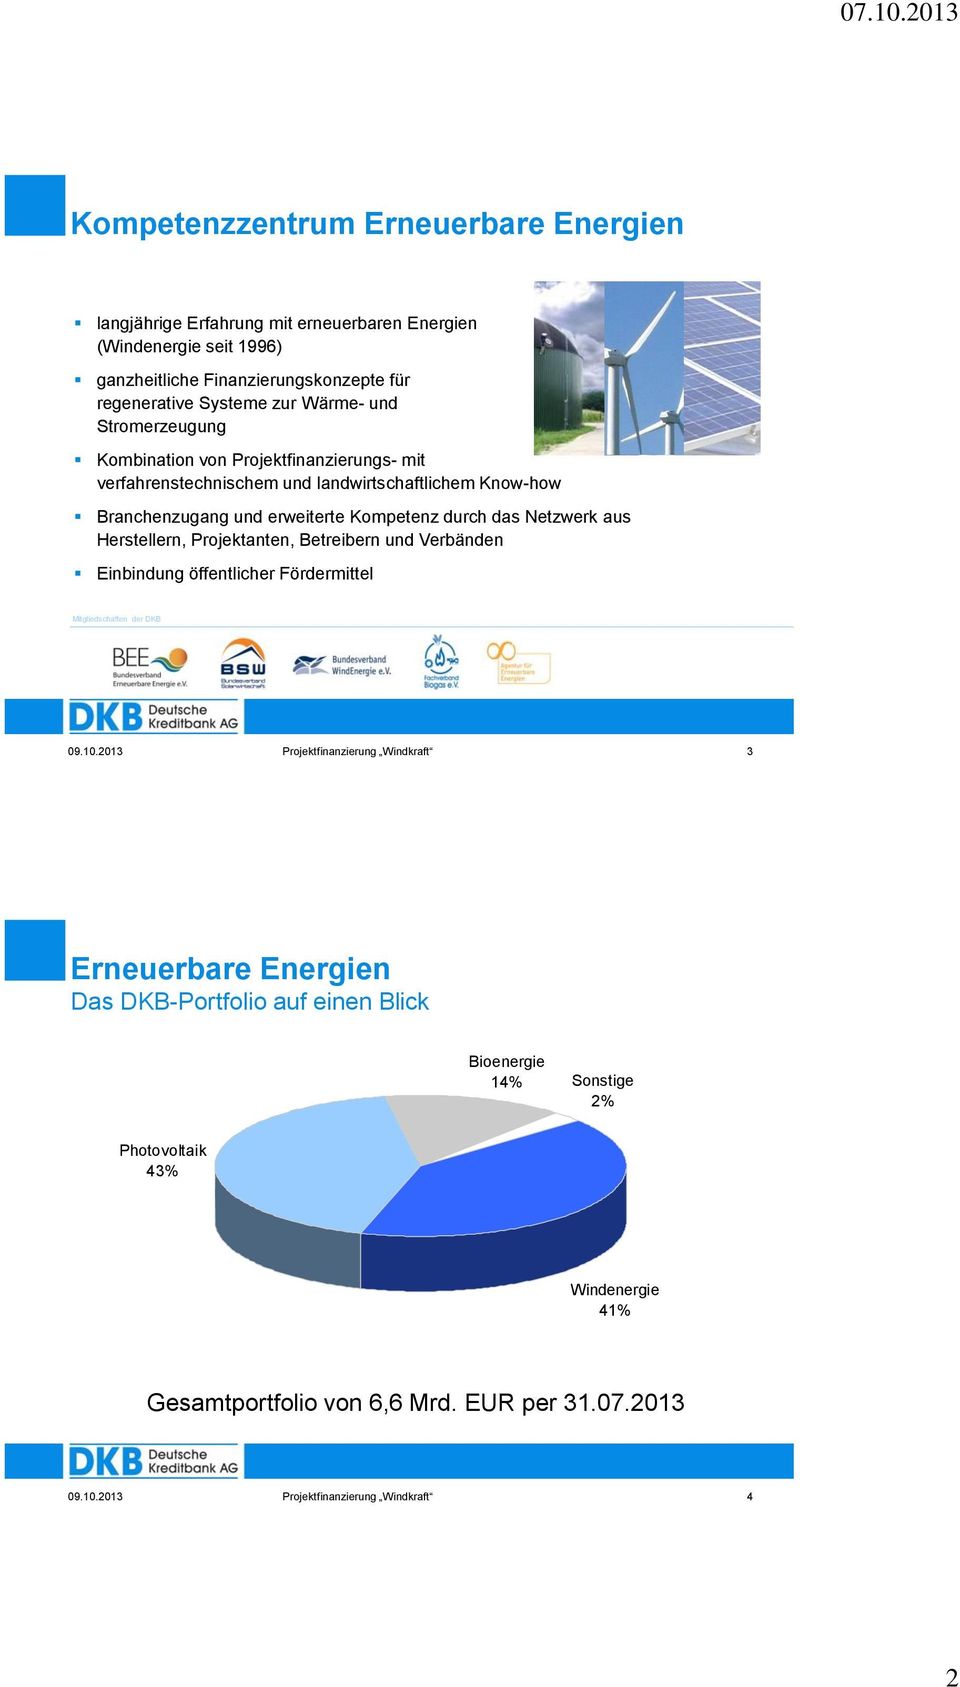 Herstellern, Projektanten, Betreibern und Verbänden Einbindung öffentlicher Fördermittel Mitgliedschaften der DKB 09.10.